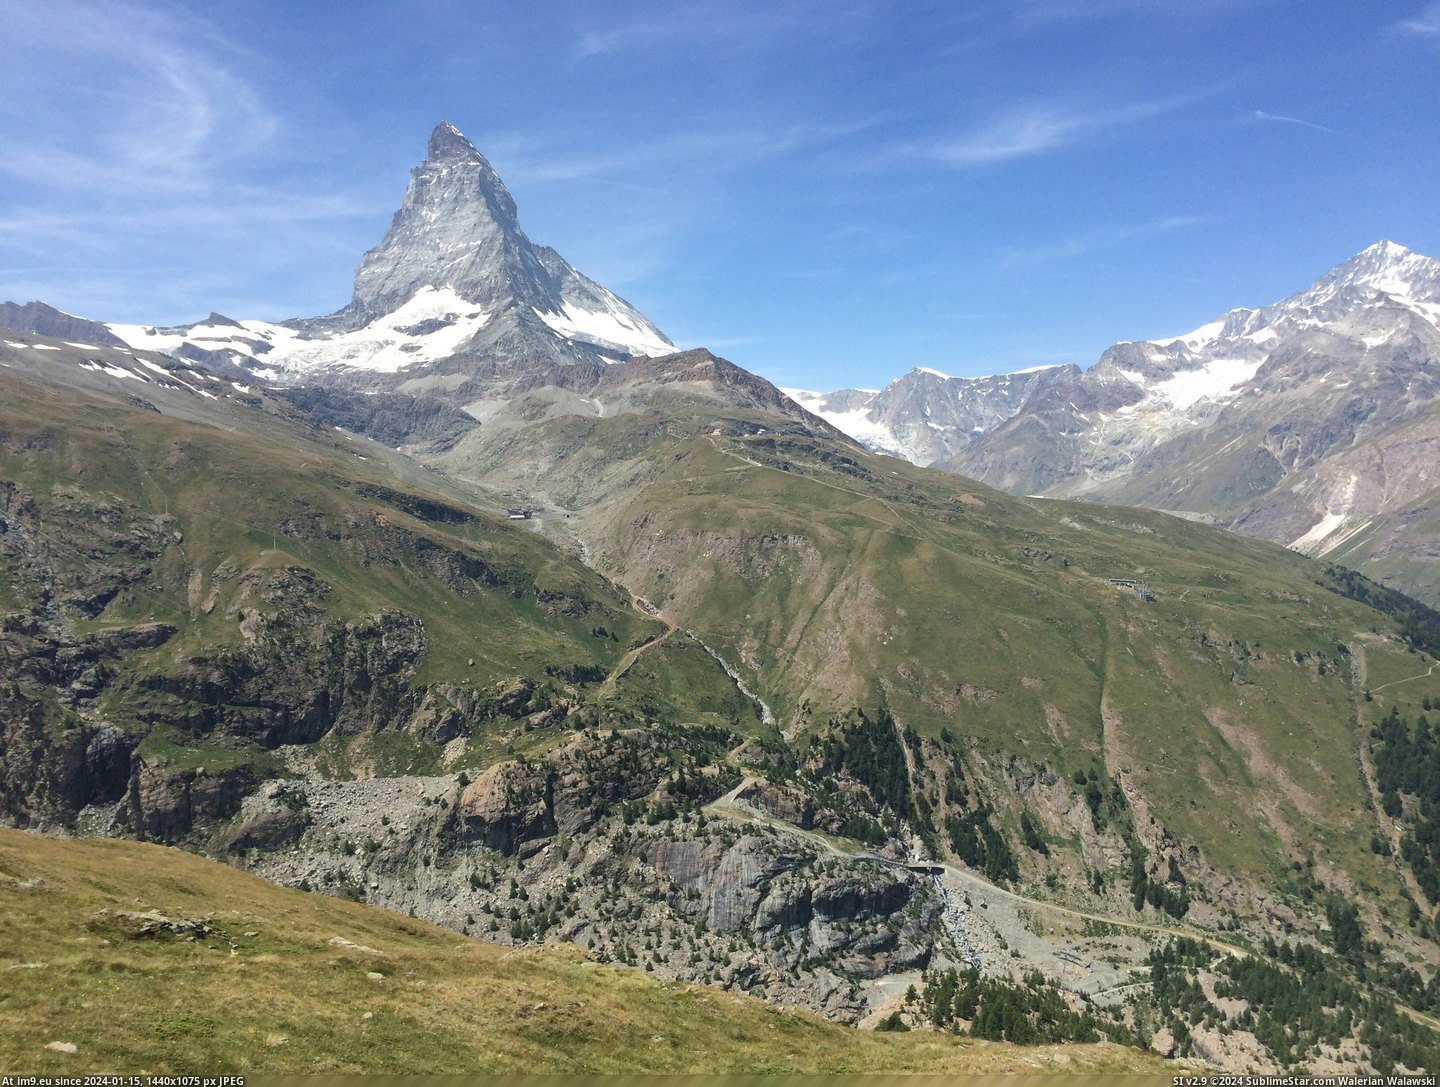 #Summer #Phone #Matterhorn #Zermatt #3264x2448 #Switzerland [Earthporn] View of Matterhorn from Riffelberg, Zermatt, Switzerland. Taken with my phone last summer.  [3264x2448] Pic. (Изображение из альбом My r/EARTHPORN favs))